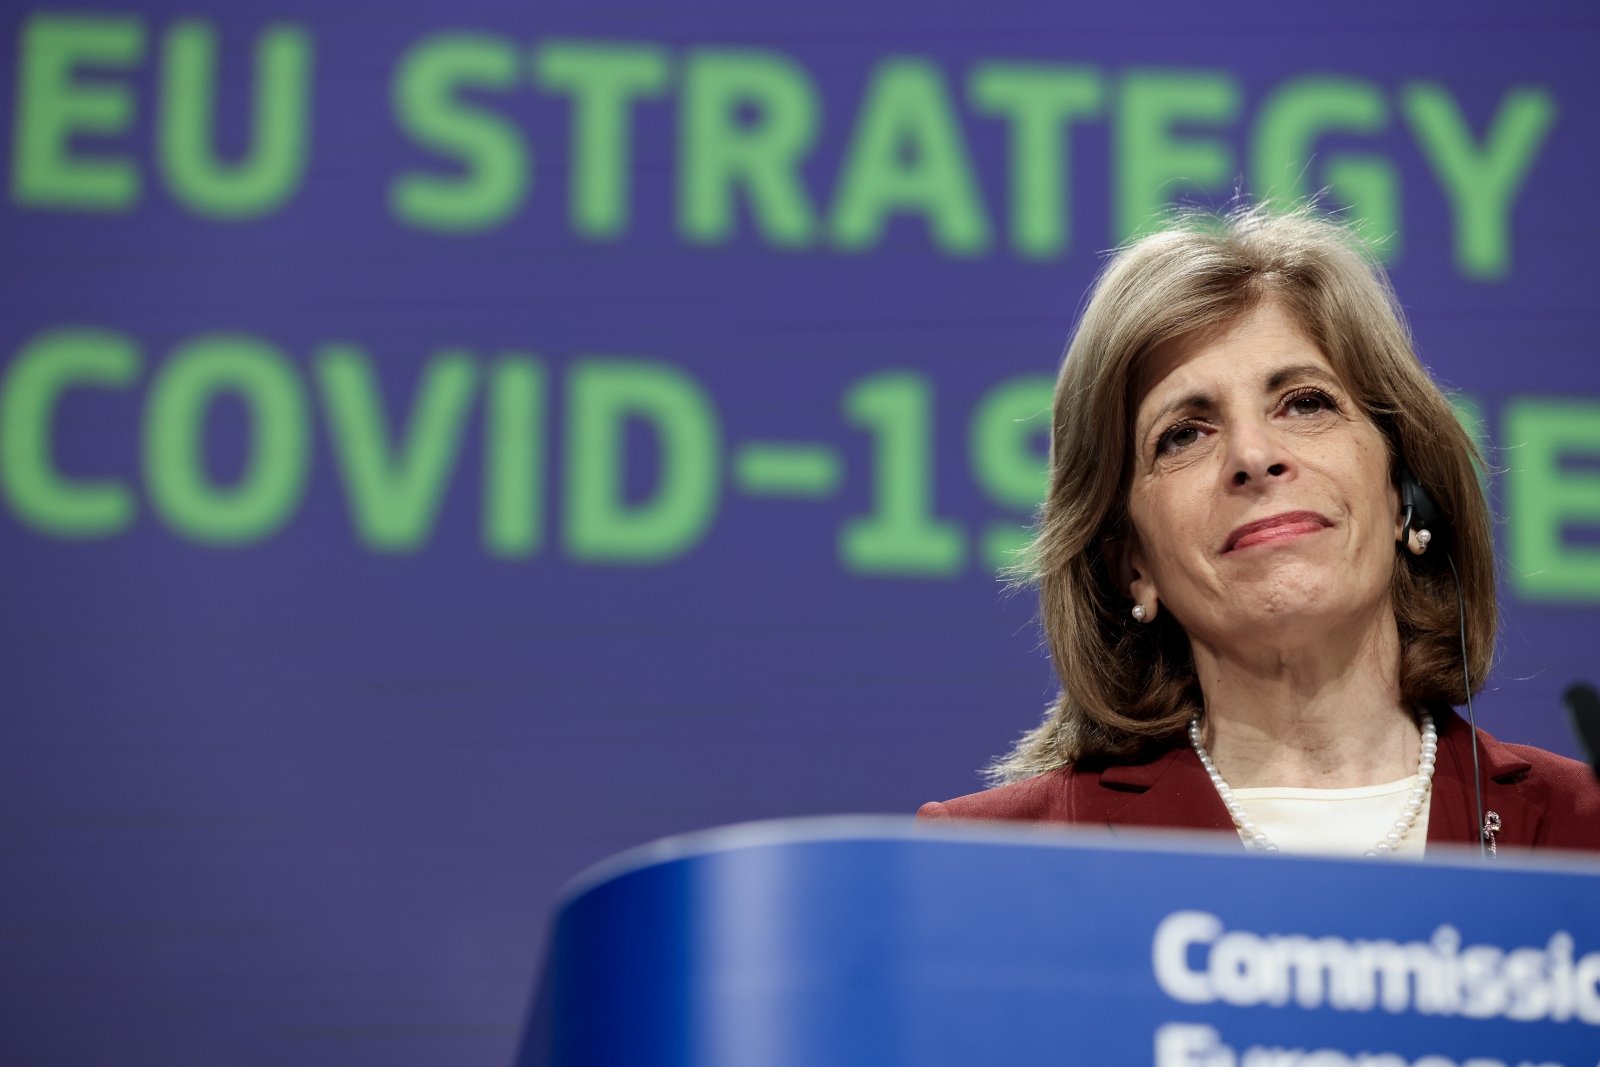 ES sveikatos komisarė ragina ruoštis naujoms koronaviruso bangoms